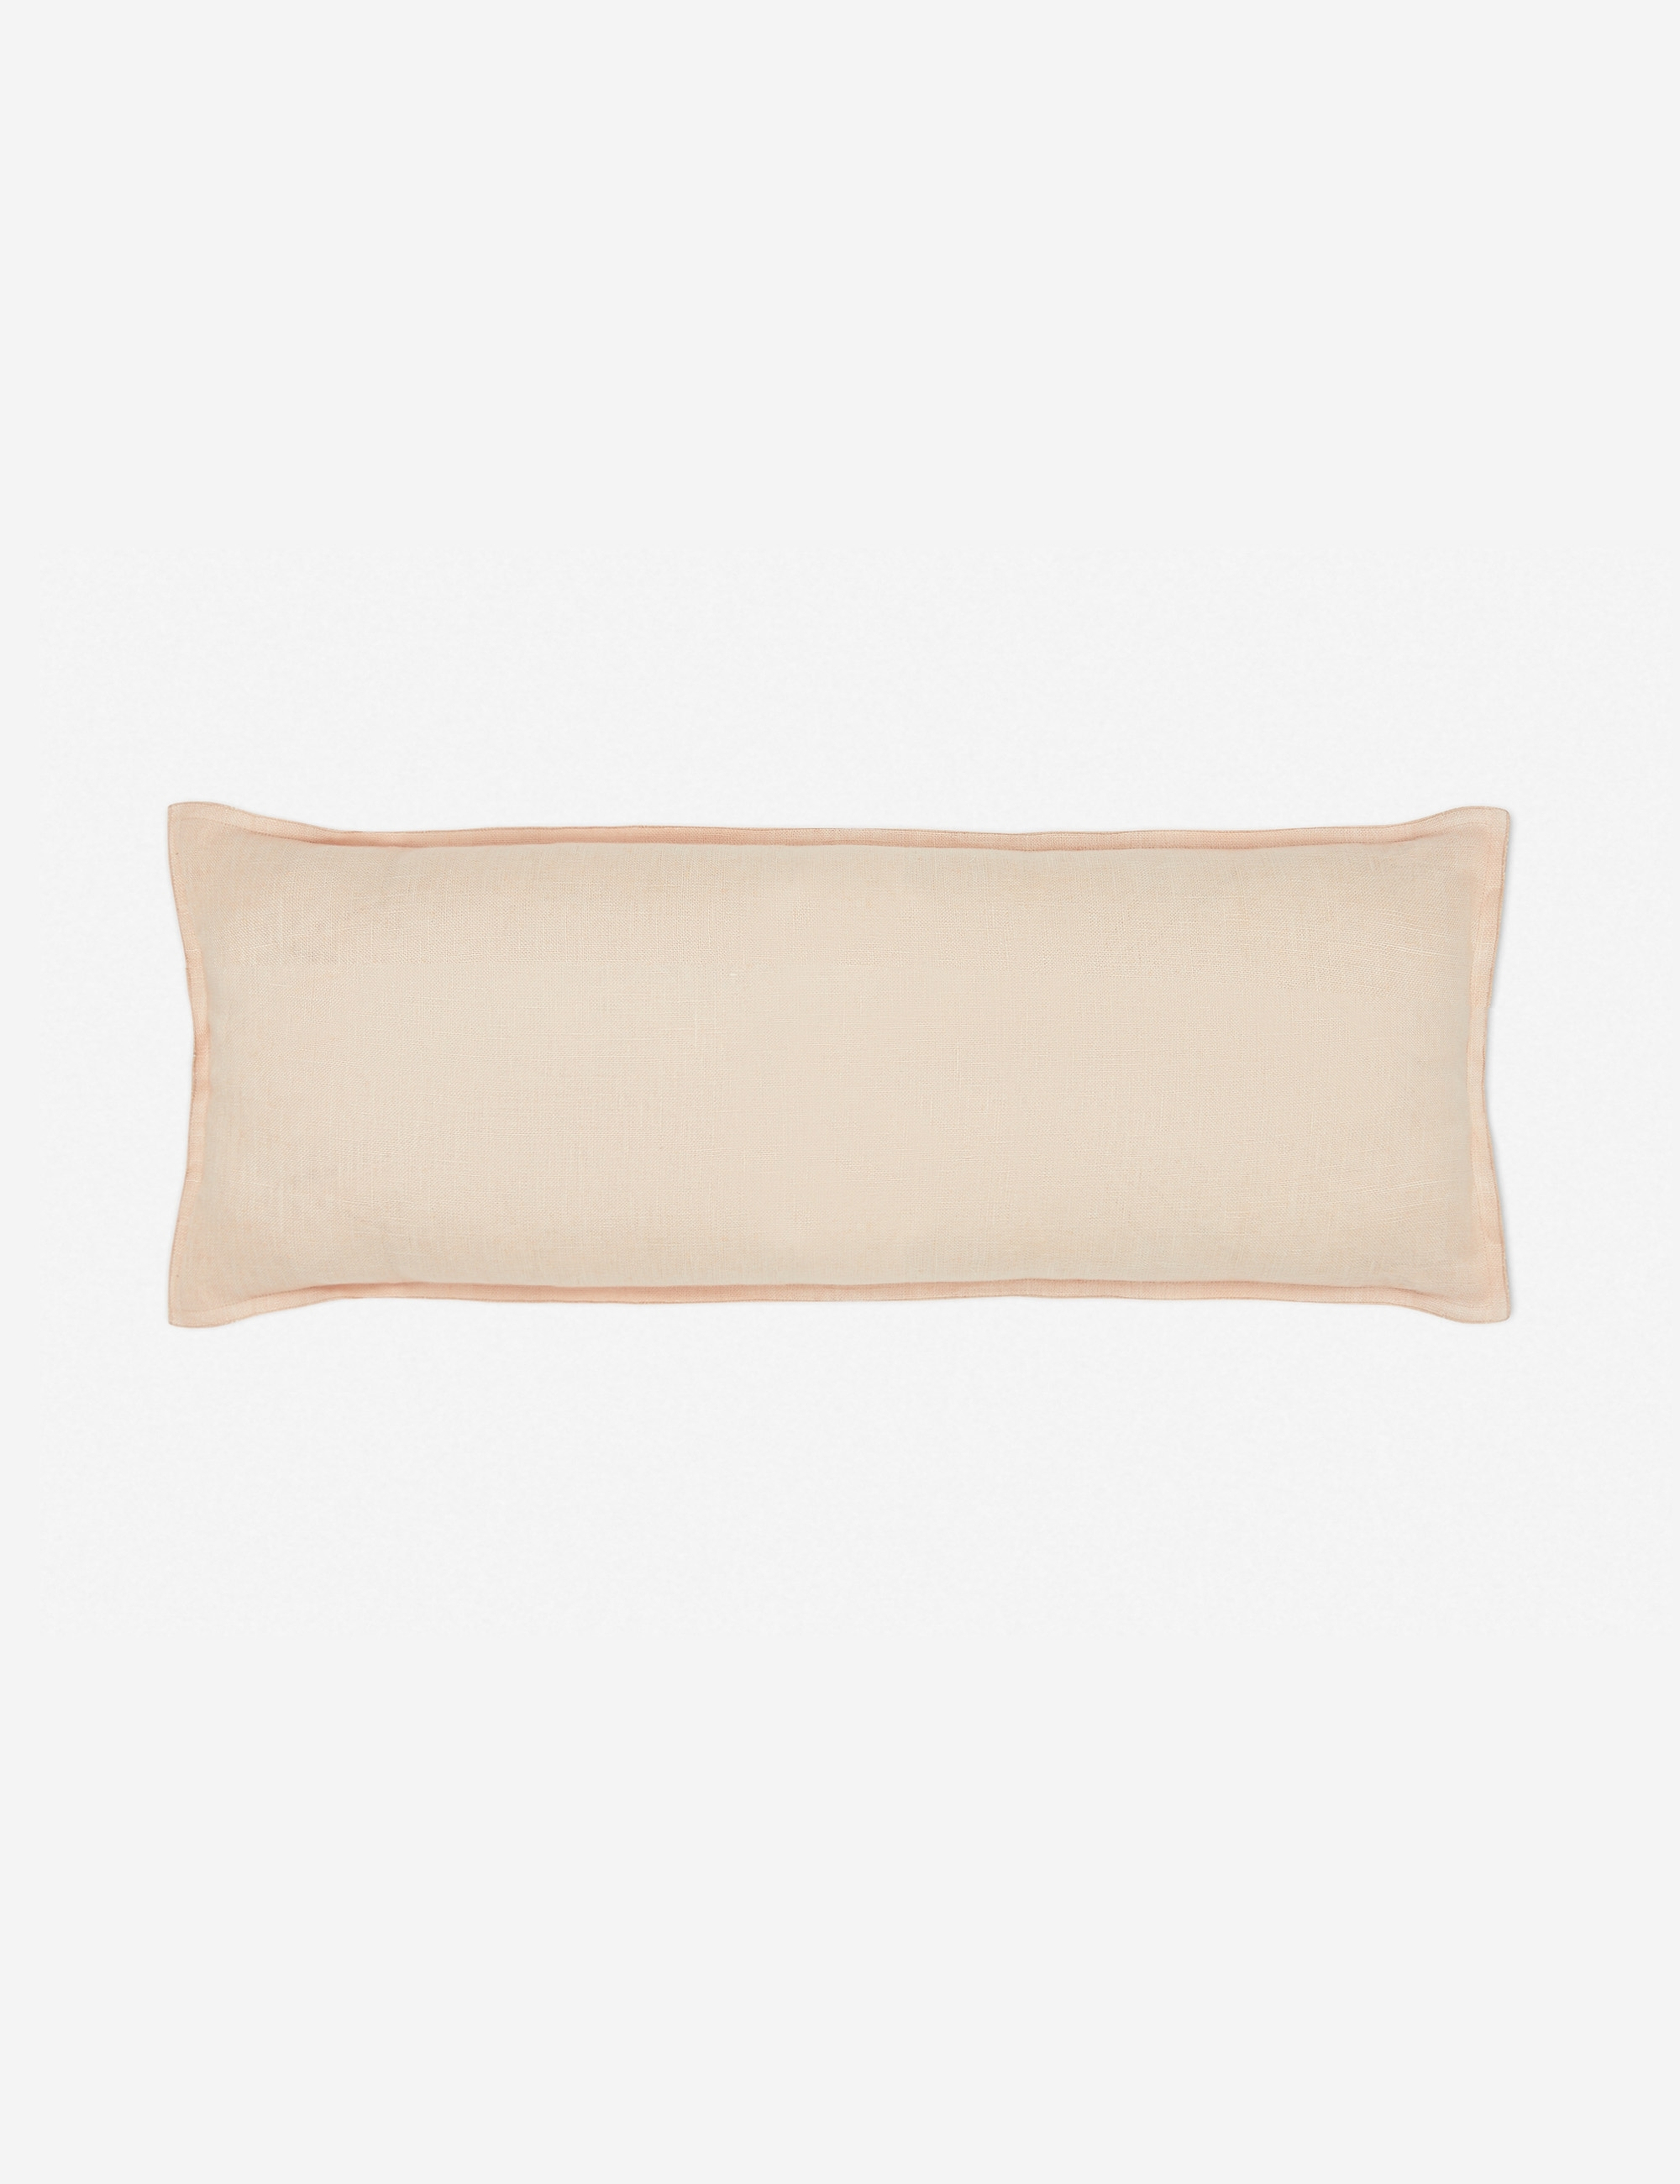 Arlo Linen Long Lumbar Pillow, Blush - Lulu and Georgia